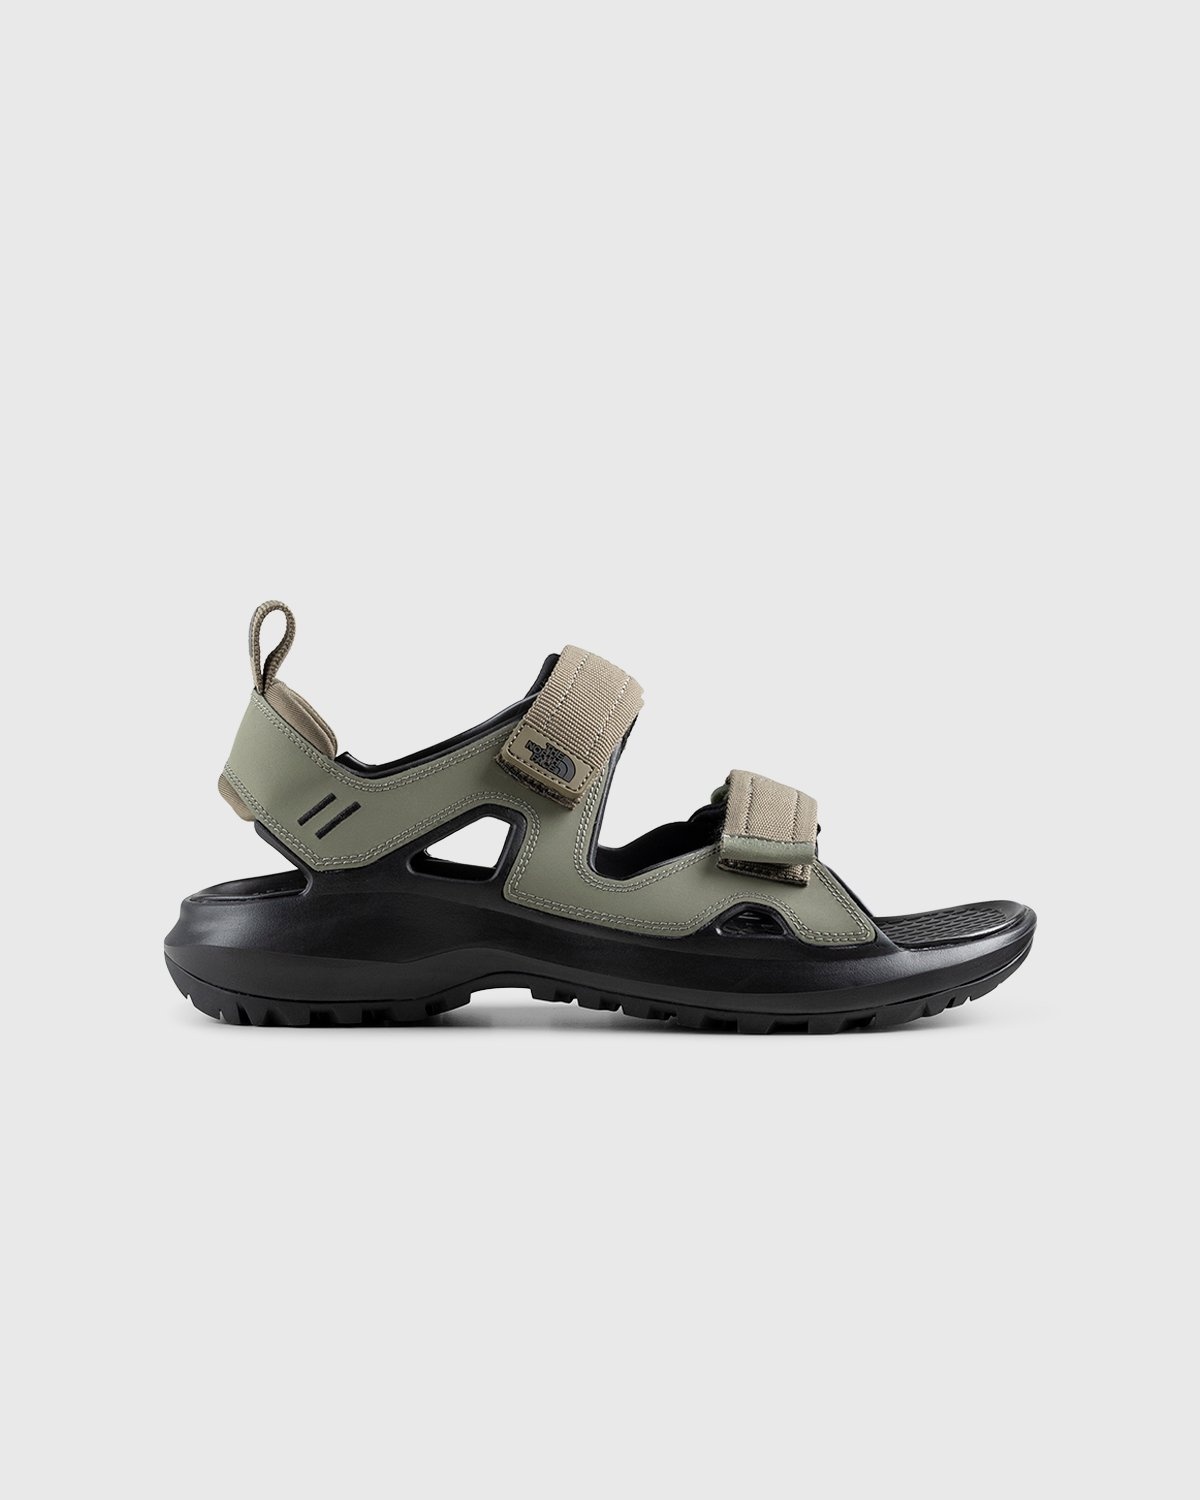 The North Face – Hedgehog Sandal III Burnt Olive Green/Black - Sandals & Slides - Green - Image 1